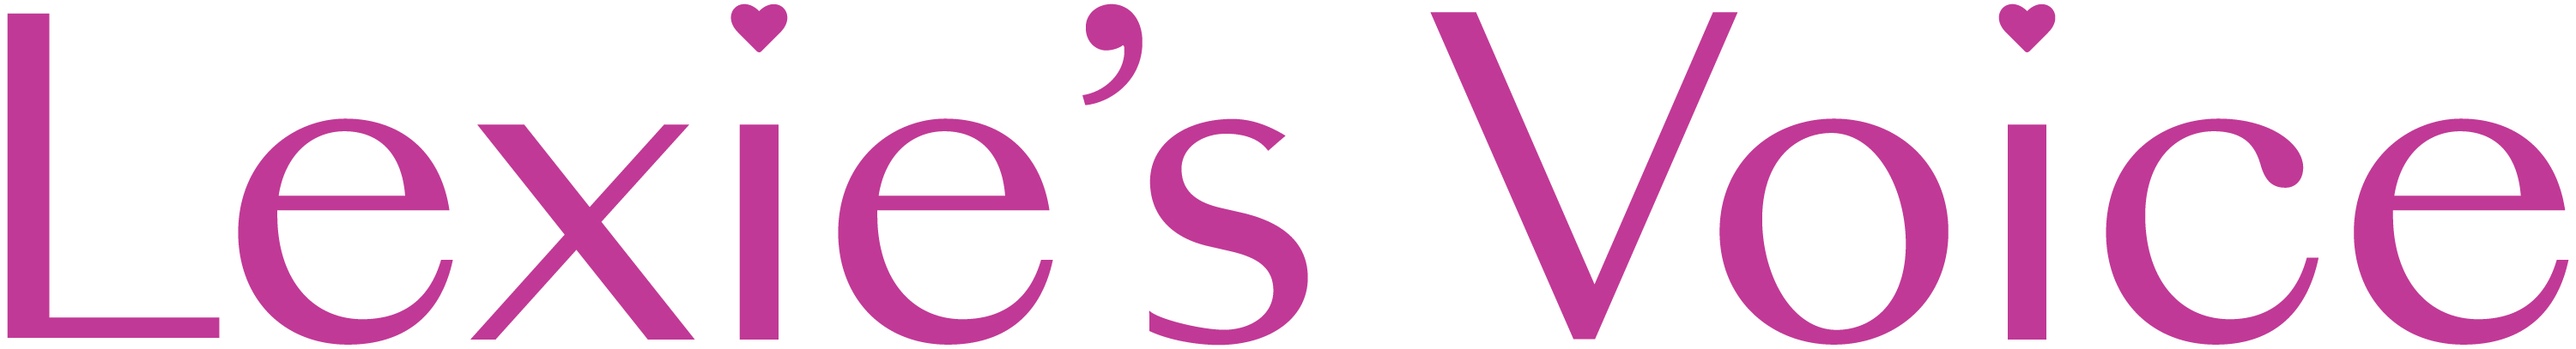 Lexies Voice_Primary Logo_Fucshia (002).jpg